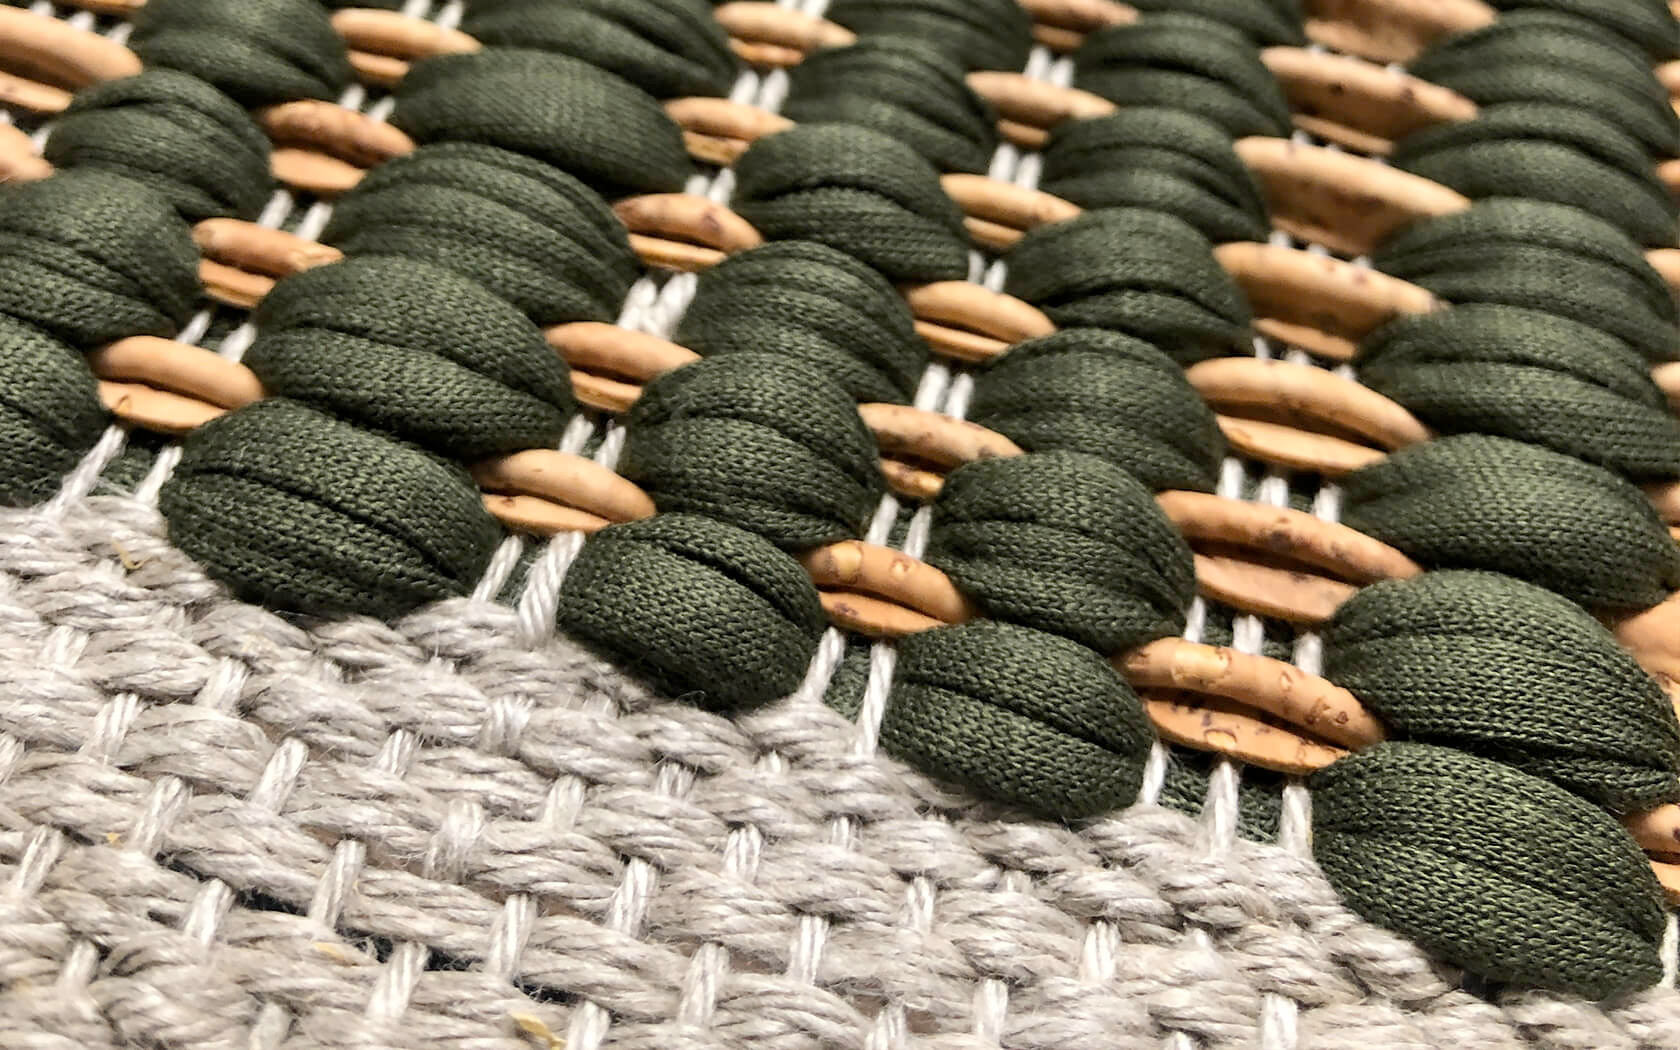 Sugo Cork Rugs, la marca de la diseñadora portuguesa Susana Godinho que incorpora de forma innovadora el corcho en el diseño de sus alfombras